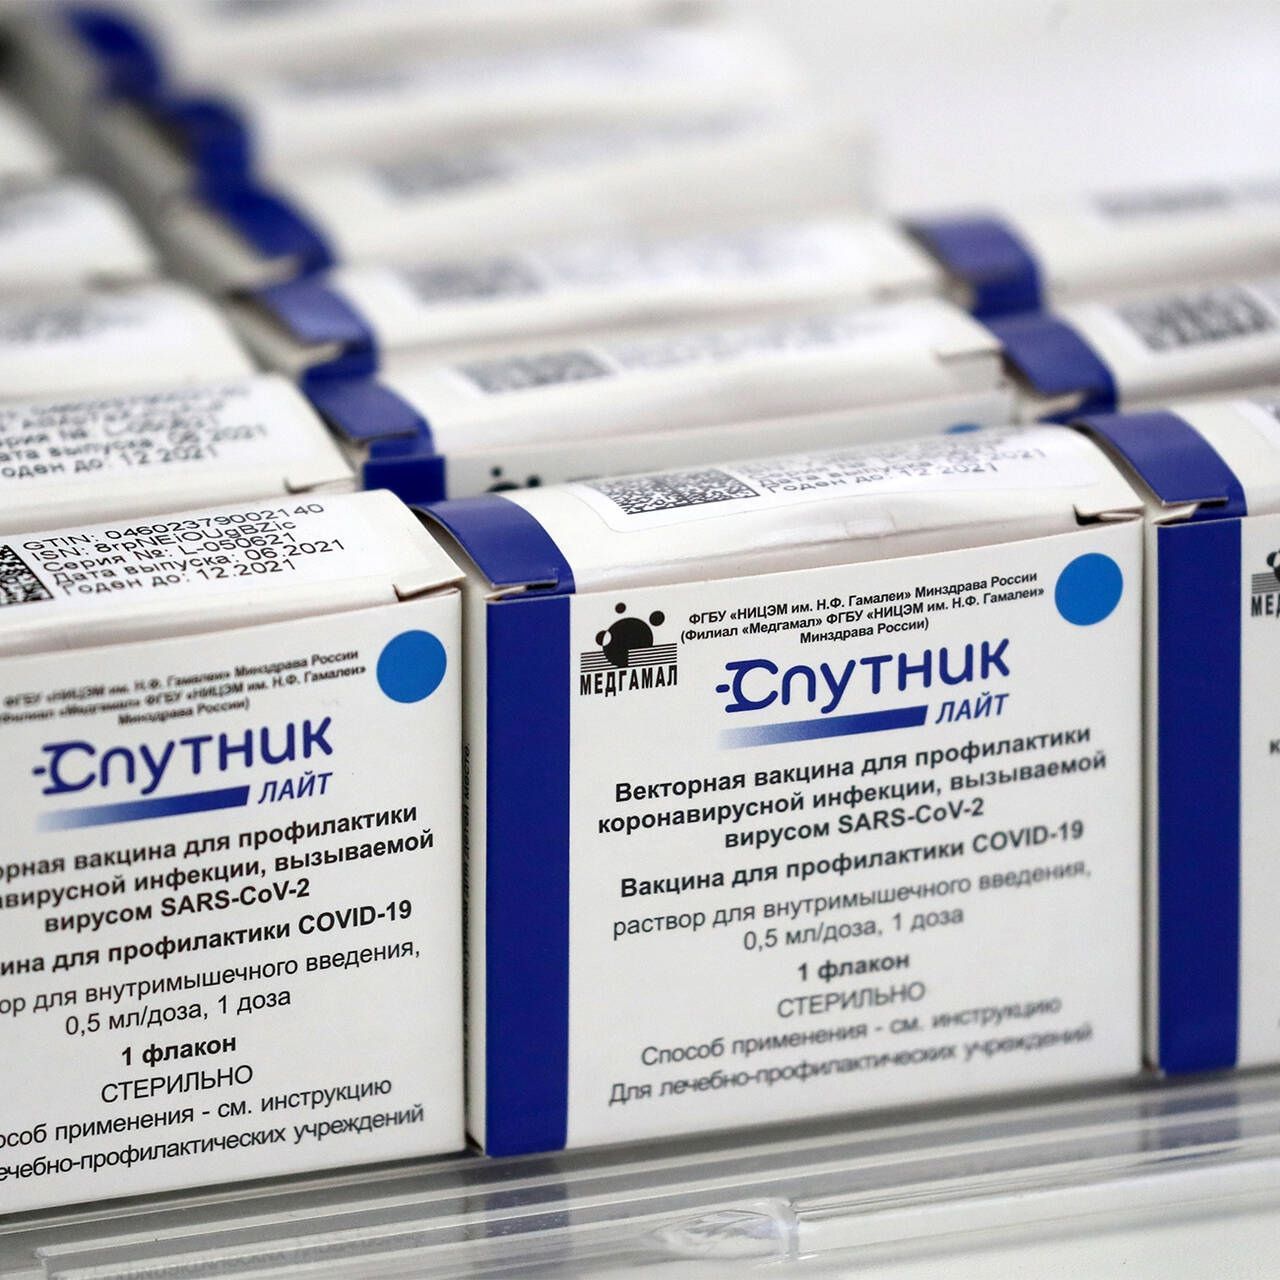  Uudella rokotteella rokotetaan nuoria. Lisäksi Sputnik Light sopii toiseen tehosterokotukseen. Kuva: Mihail Ohlopkovin VKontakte-tili.